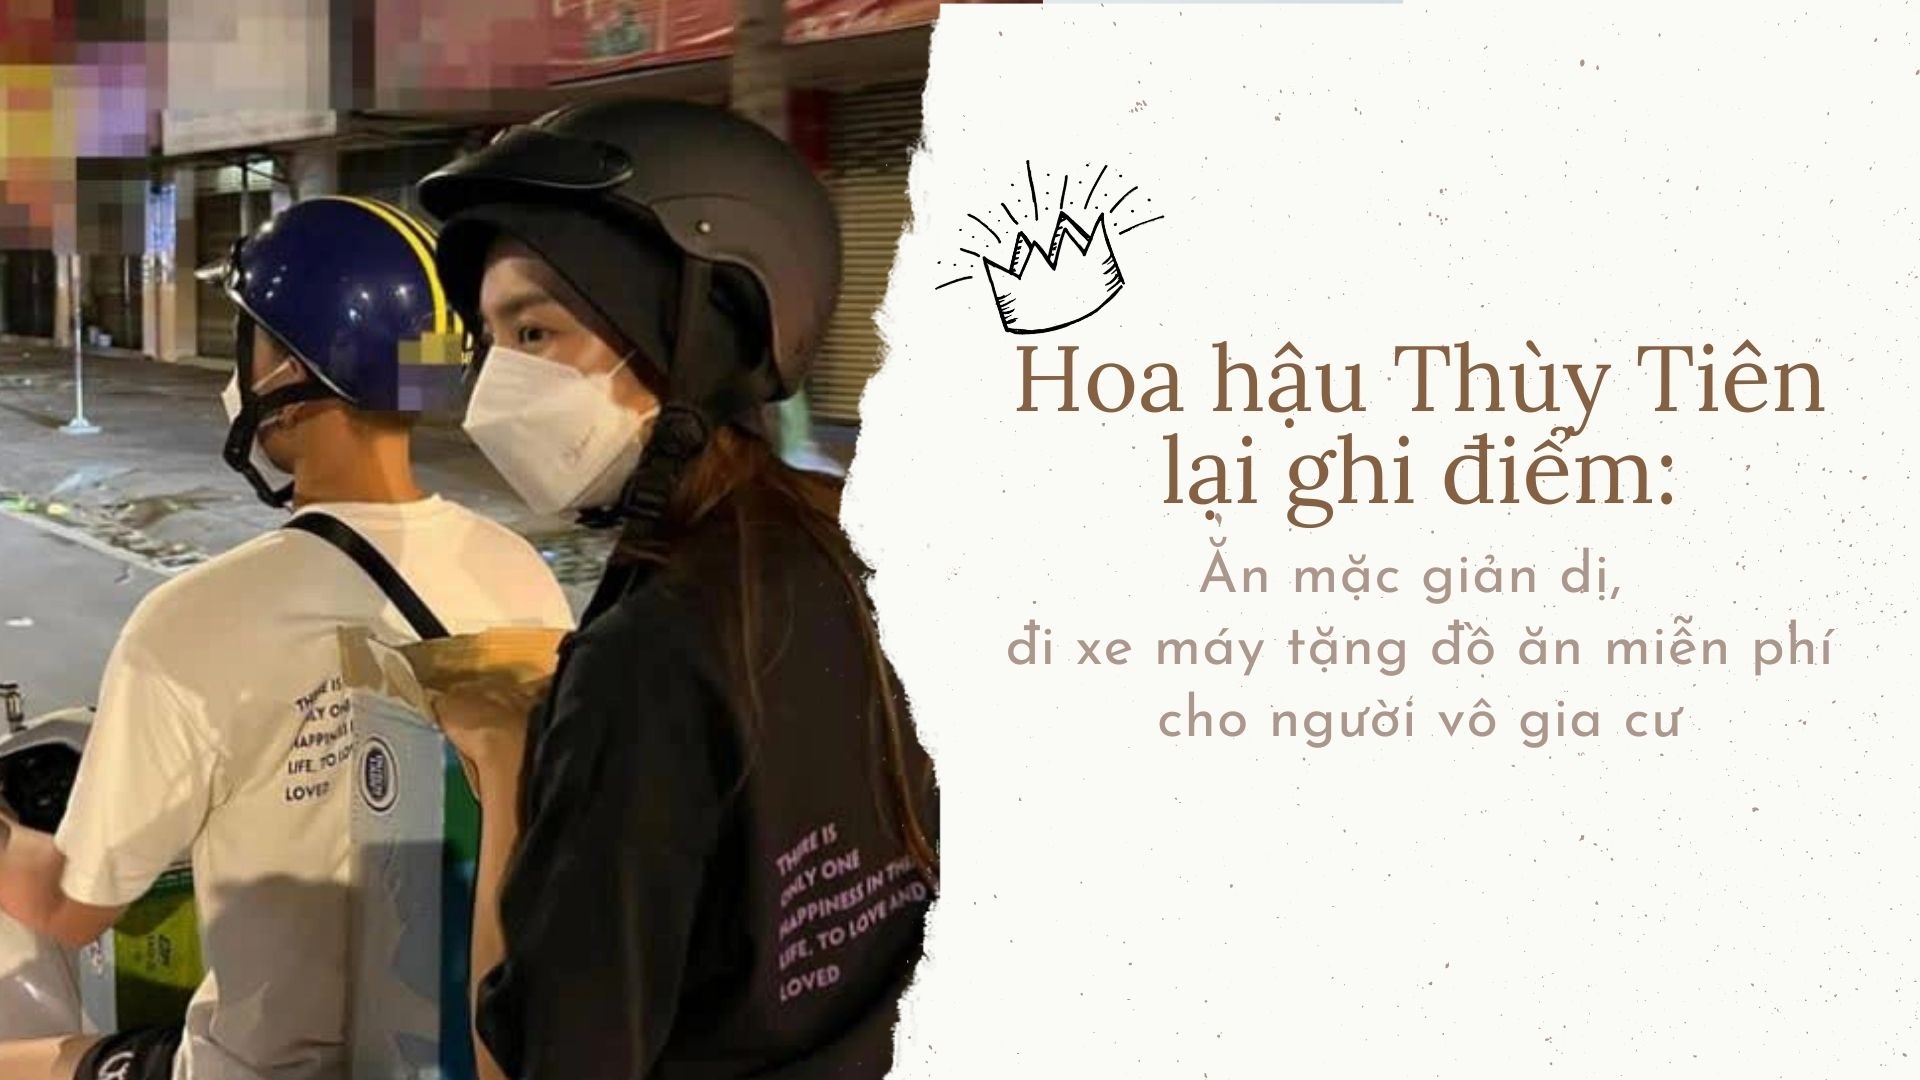 Hoa hậu Thùy Tiên mặc giản dị, đi xe máy tặng suất ăn miễn phí cho người vô gia cư